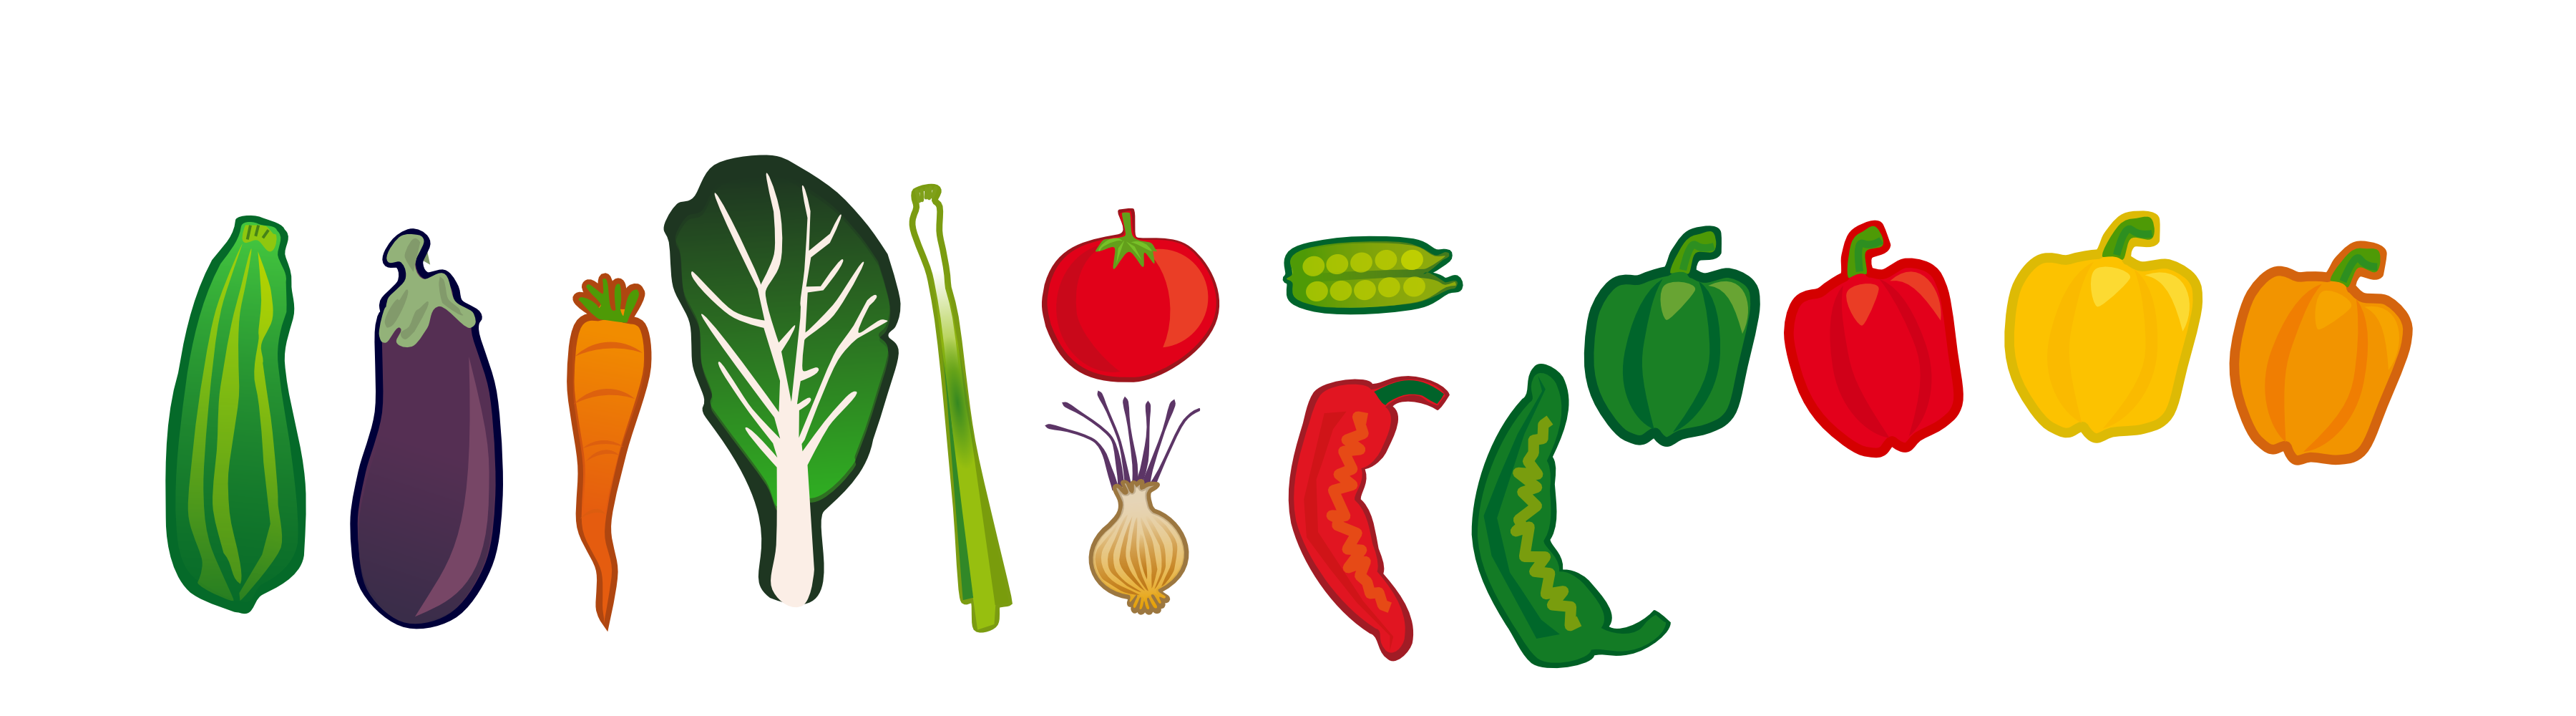 Vegetables clip art 3 clipartix